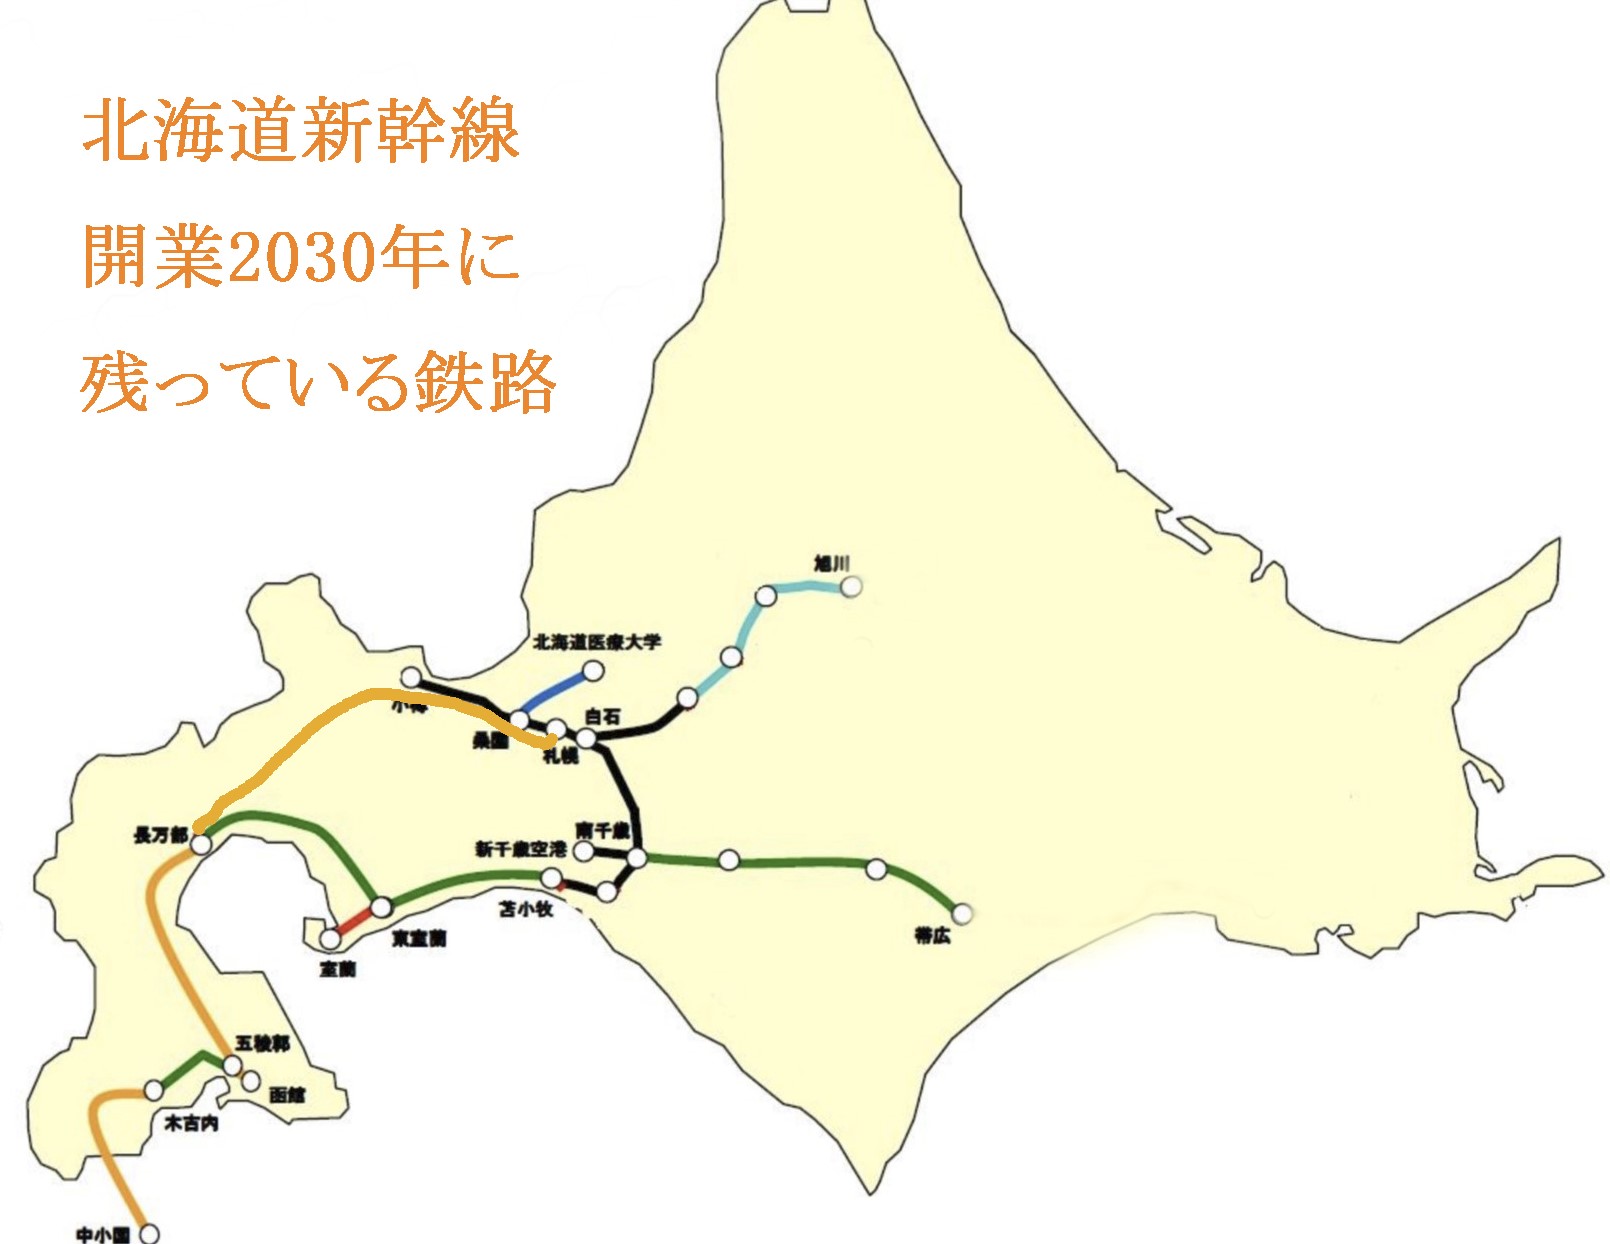 JR 北海道廃線化の現実 国鉄分割・民営化とは北海道の切り捨てだった